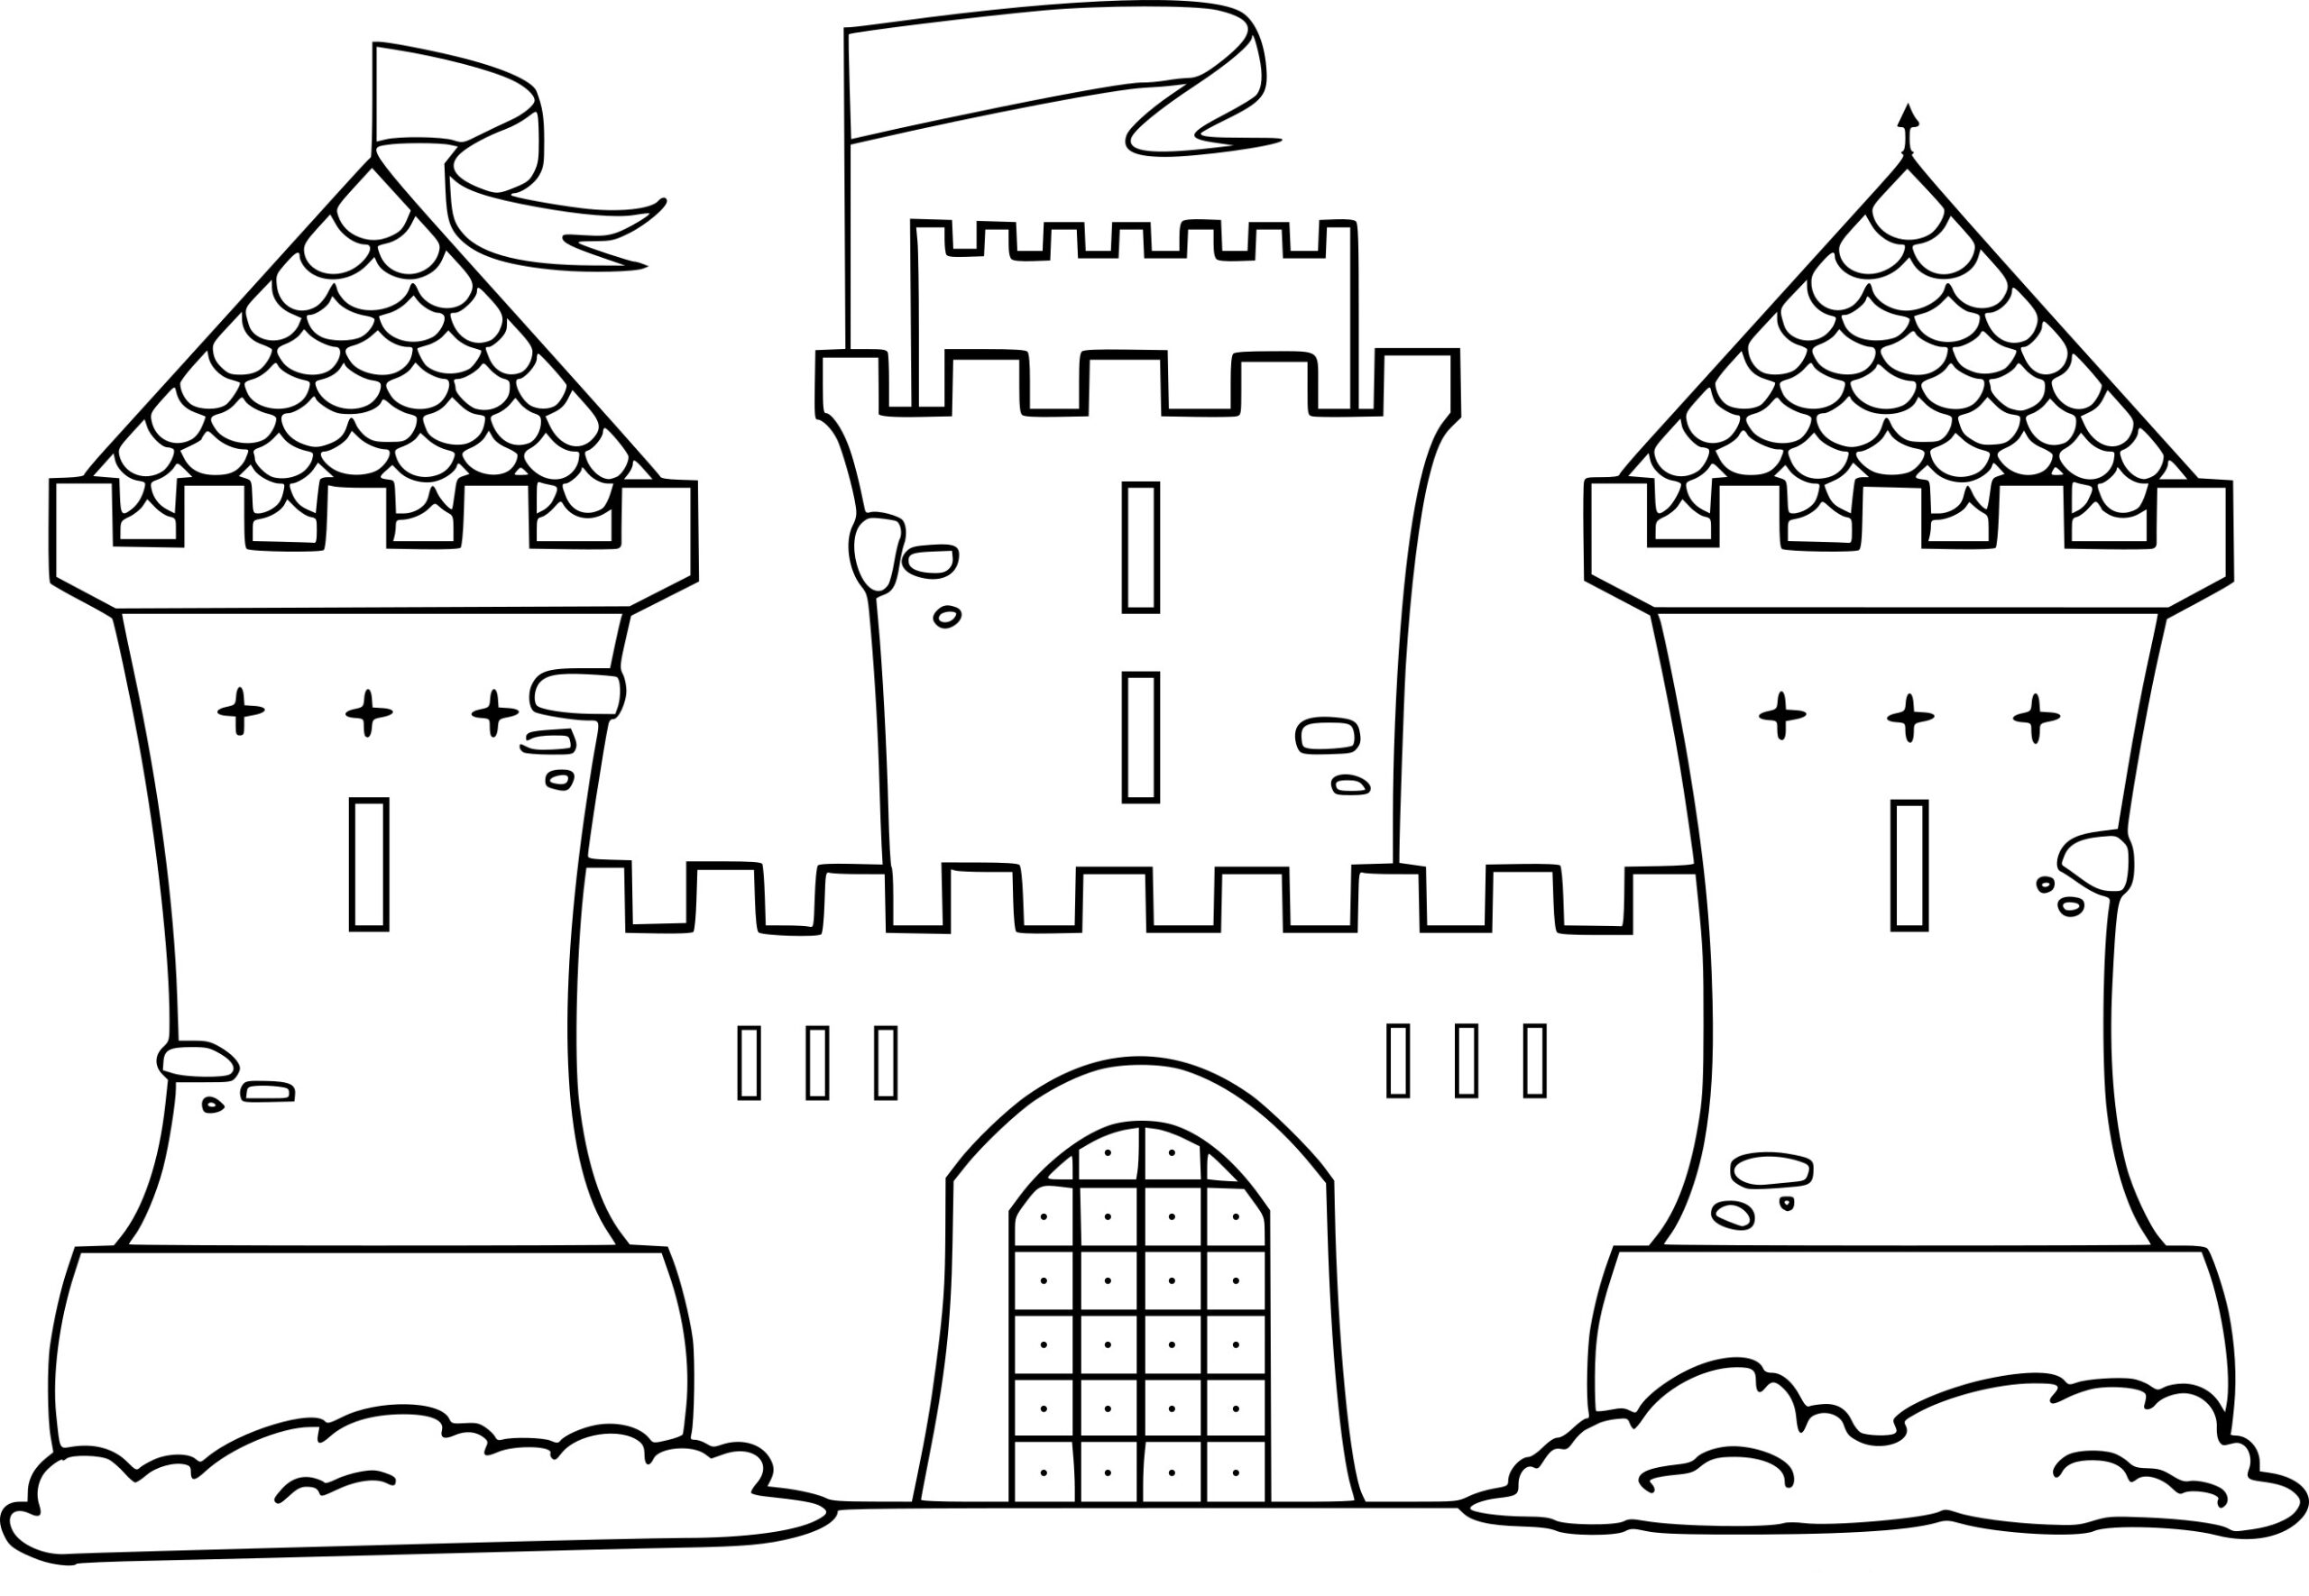 Coloriage Chateau Moyen Age À Imprimer tout Coloriage Chateau